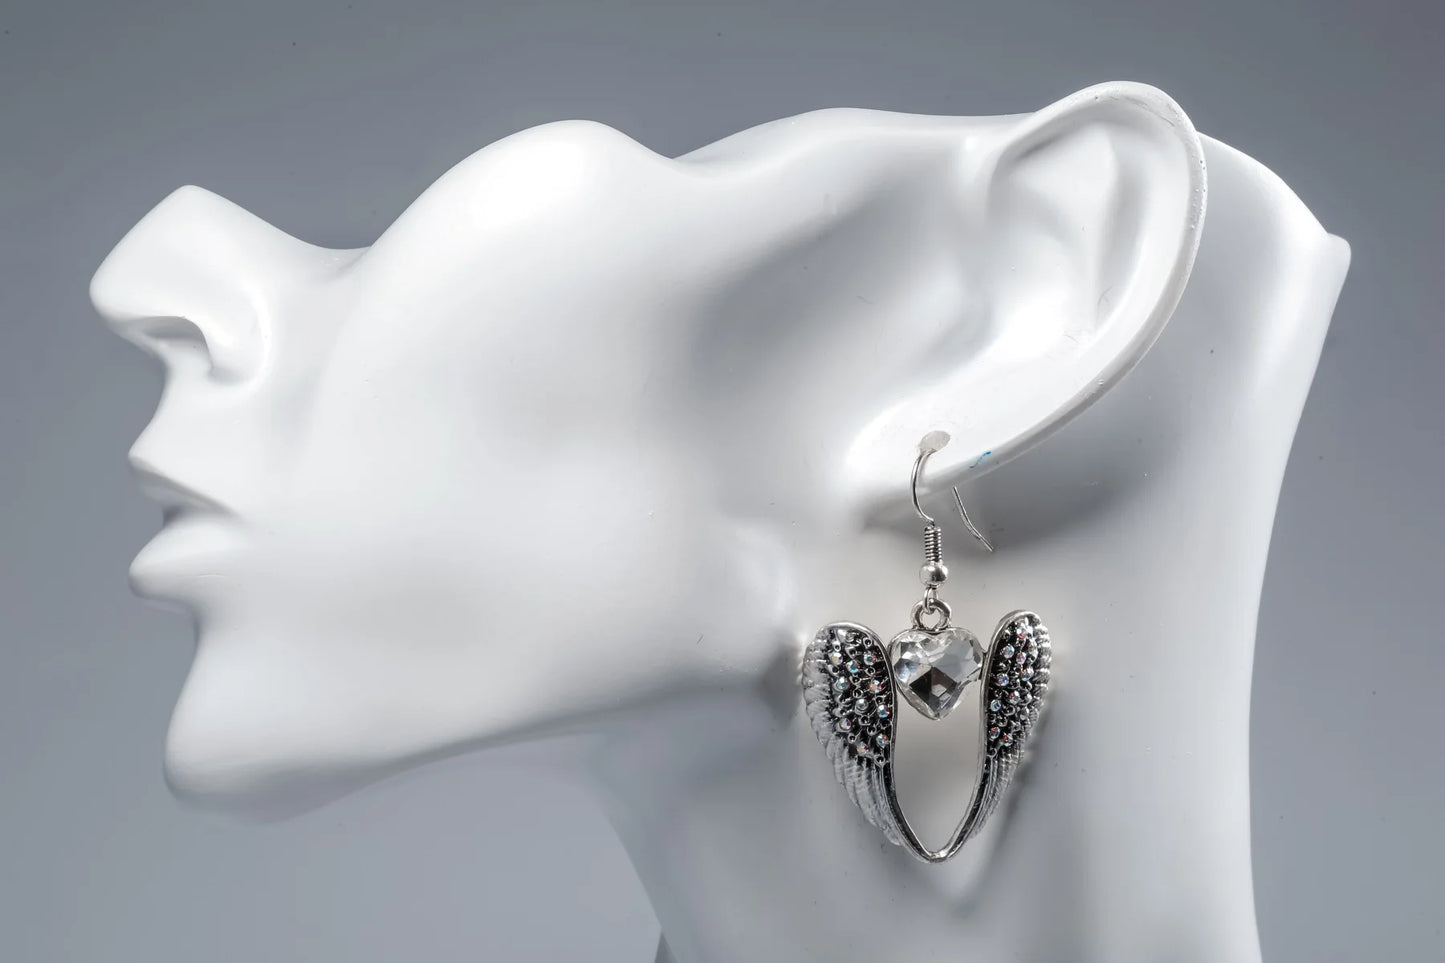 Women's Winged Heart Dangle Drop Earrings Antique Silver Color W/Crystal